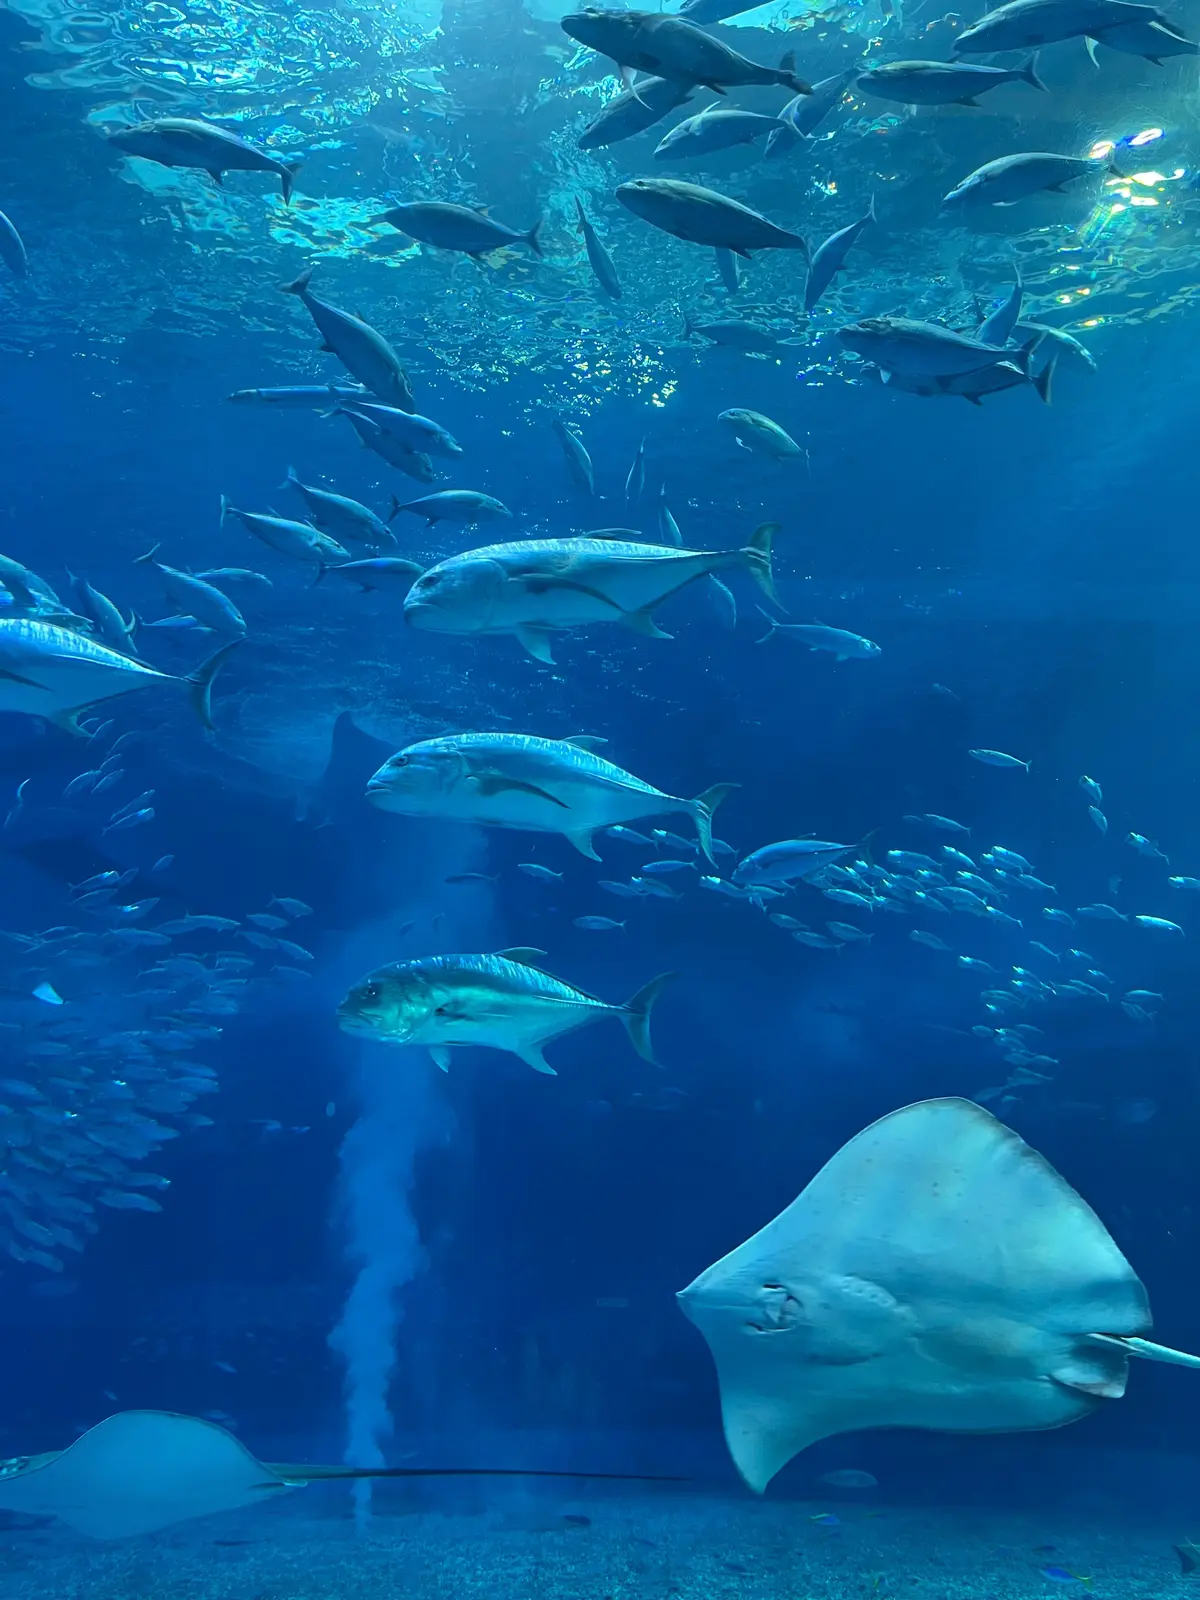 【沖縄】ジンベエザメに会える美ら海水族館の画像_4